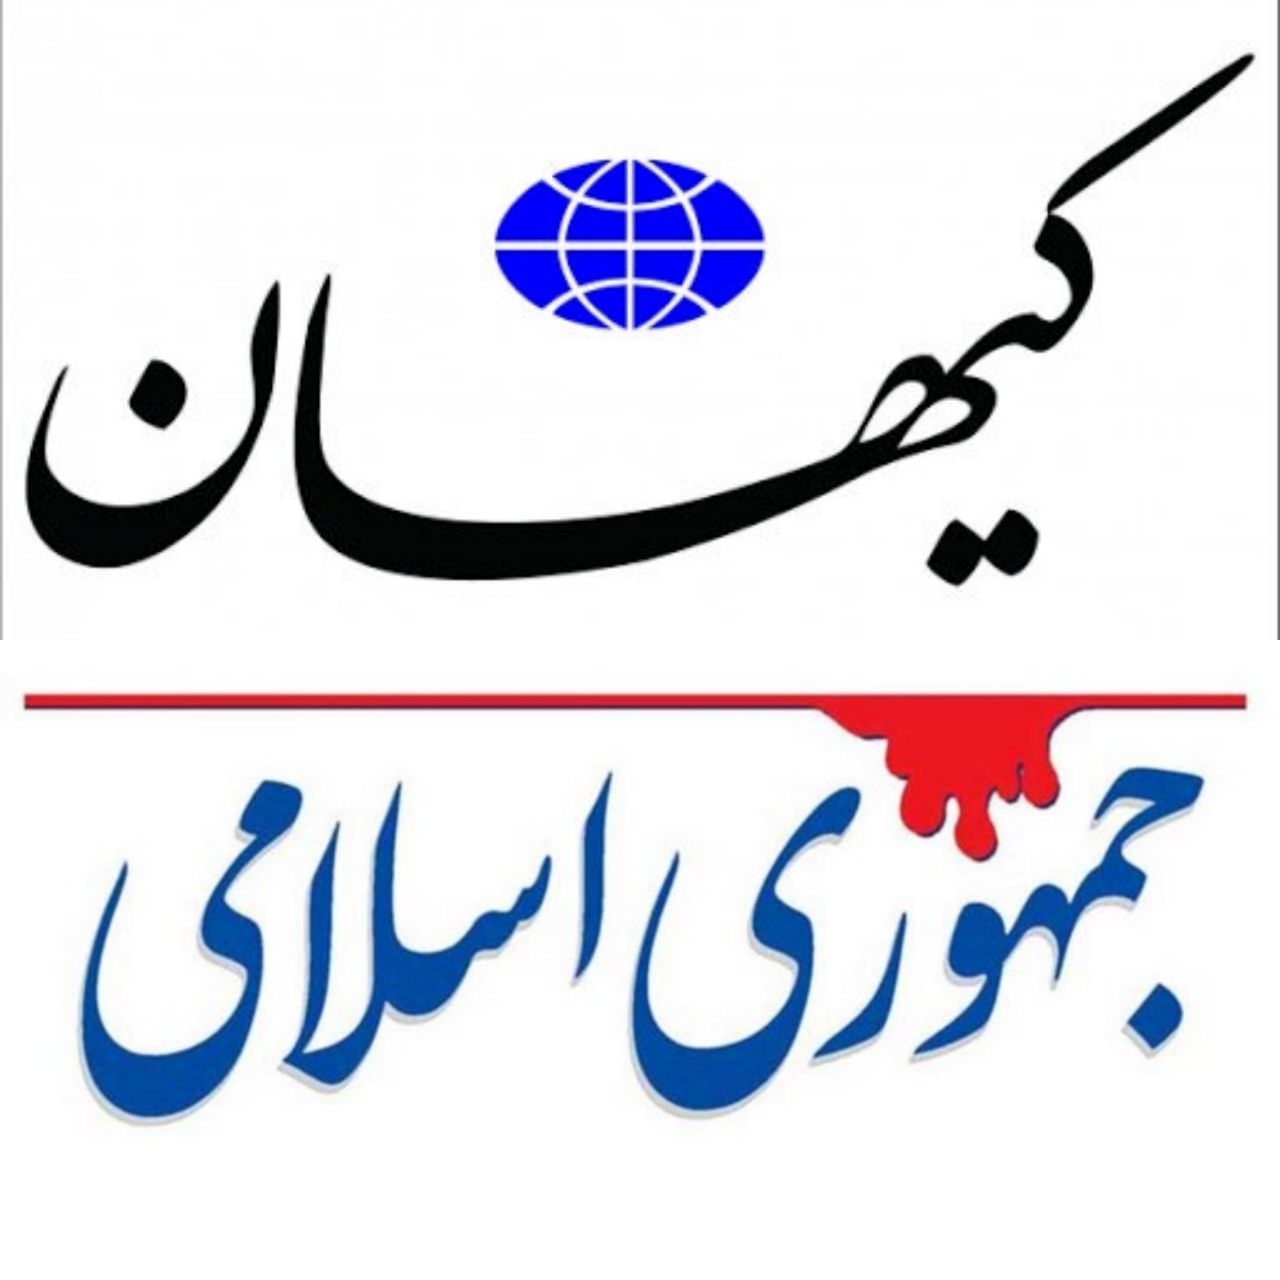 حمله کیهان به مسیح مهاجری و روزنامه جمهوری اسلامی /مگر خاتمی از همتی حمایت نکرده بود؟